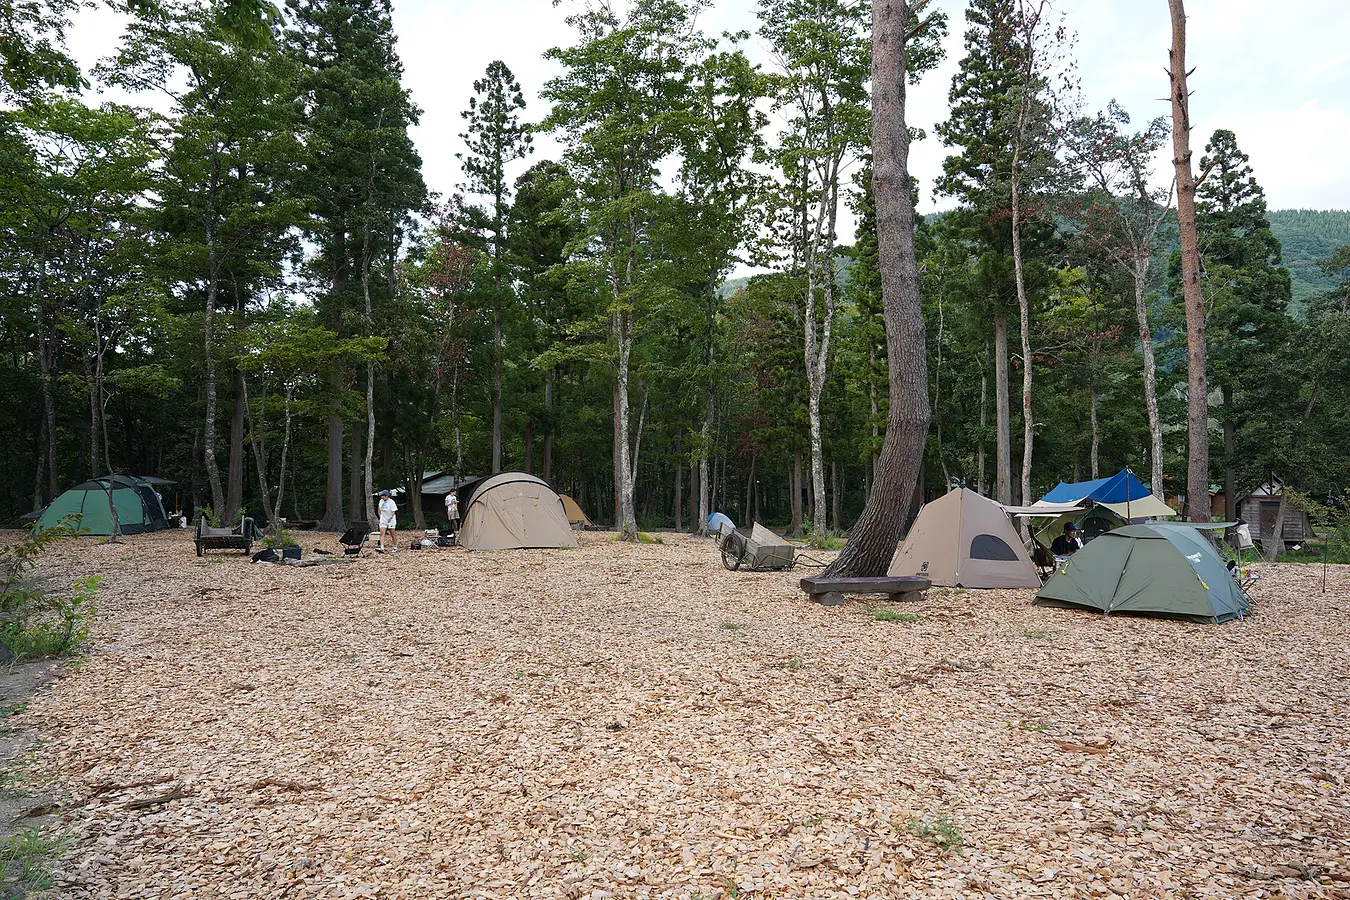 インドア家族、湯沢市のとことん山キャンプ場に行く。 | ブランニューアキタ | アキタファン